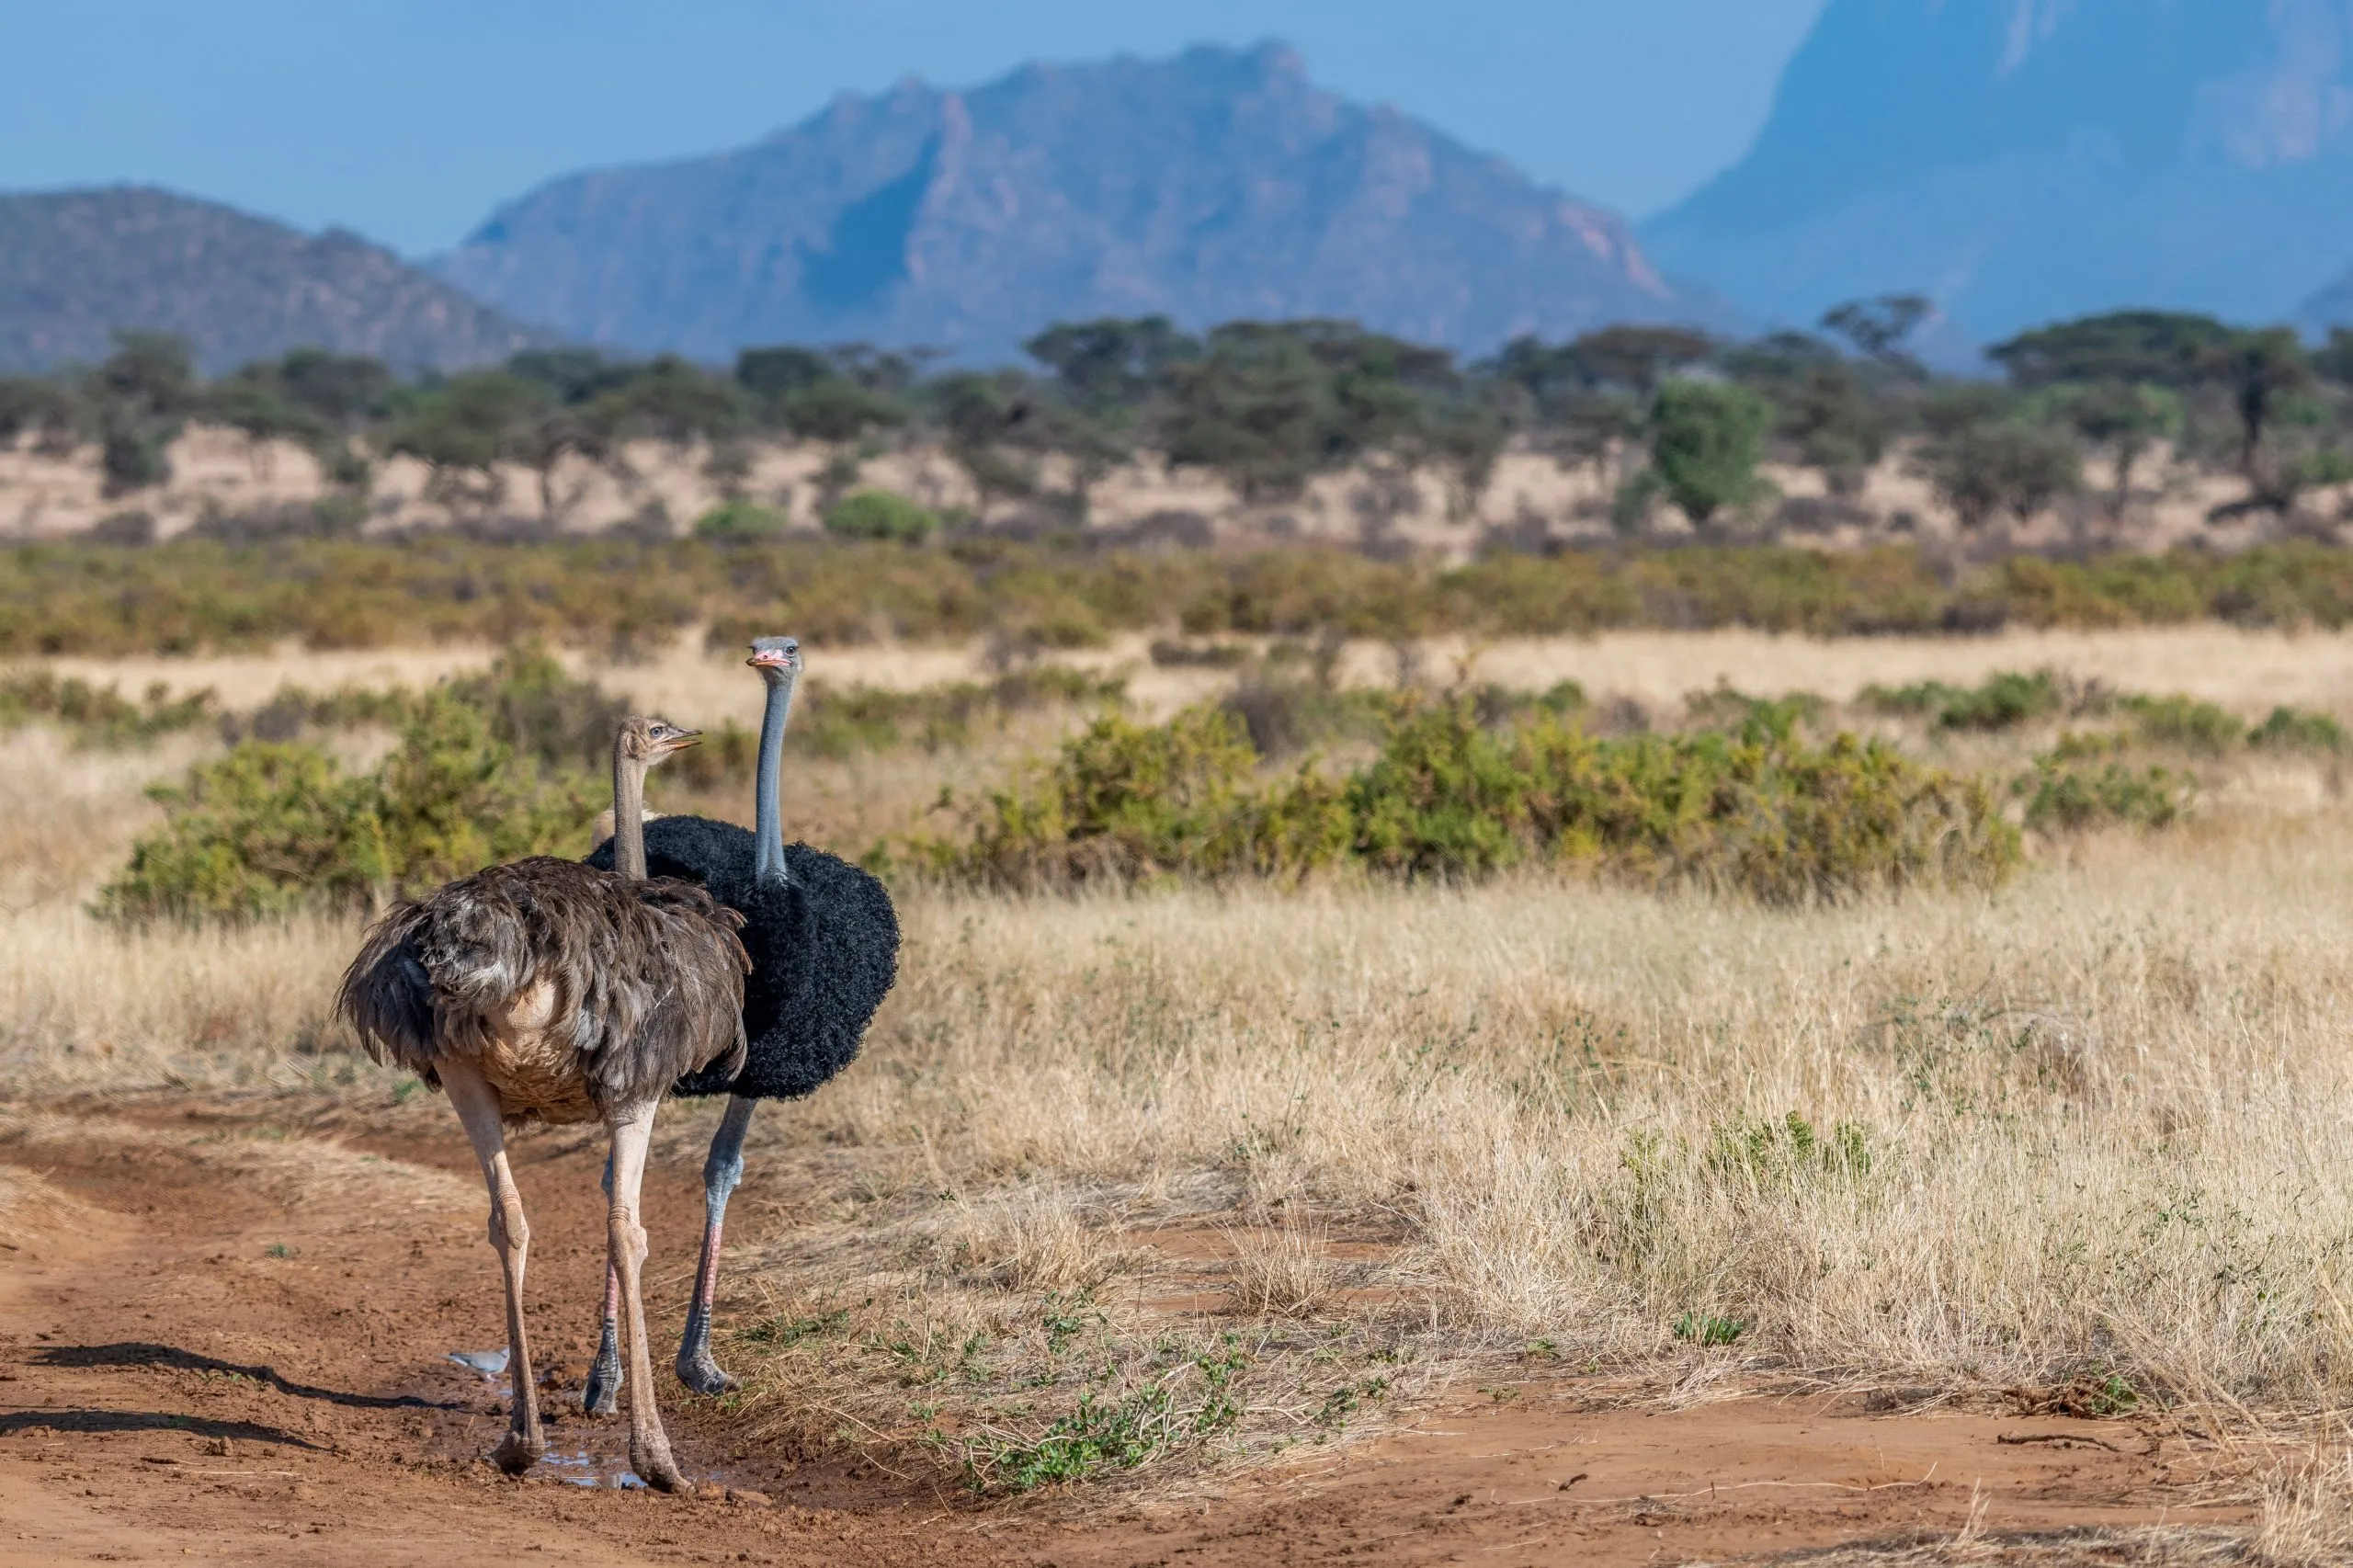 Paysage semi-aride dans la réserve nationale de Samburu, Kenya. Rare autruche de Somalie mâle et femelle au premier plan. Un couple en train de s'accoupler. La couleur de la peau du cou et des cuisses est gris bleu. Énorme oiseau incapable de voler. Afrique.